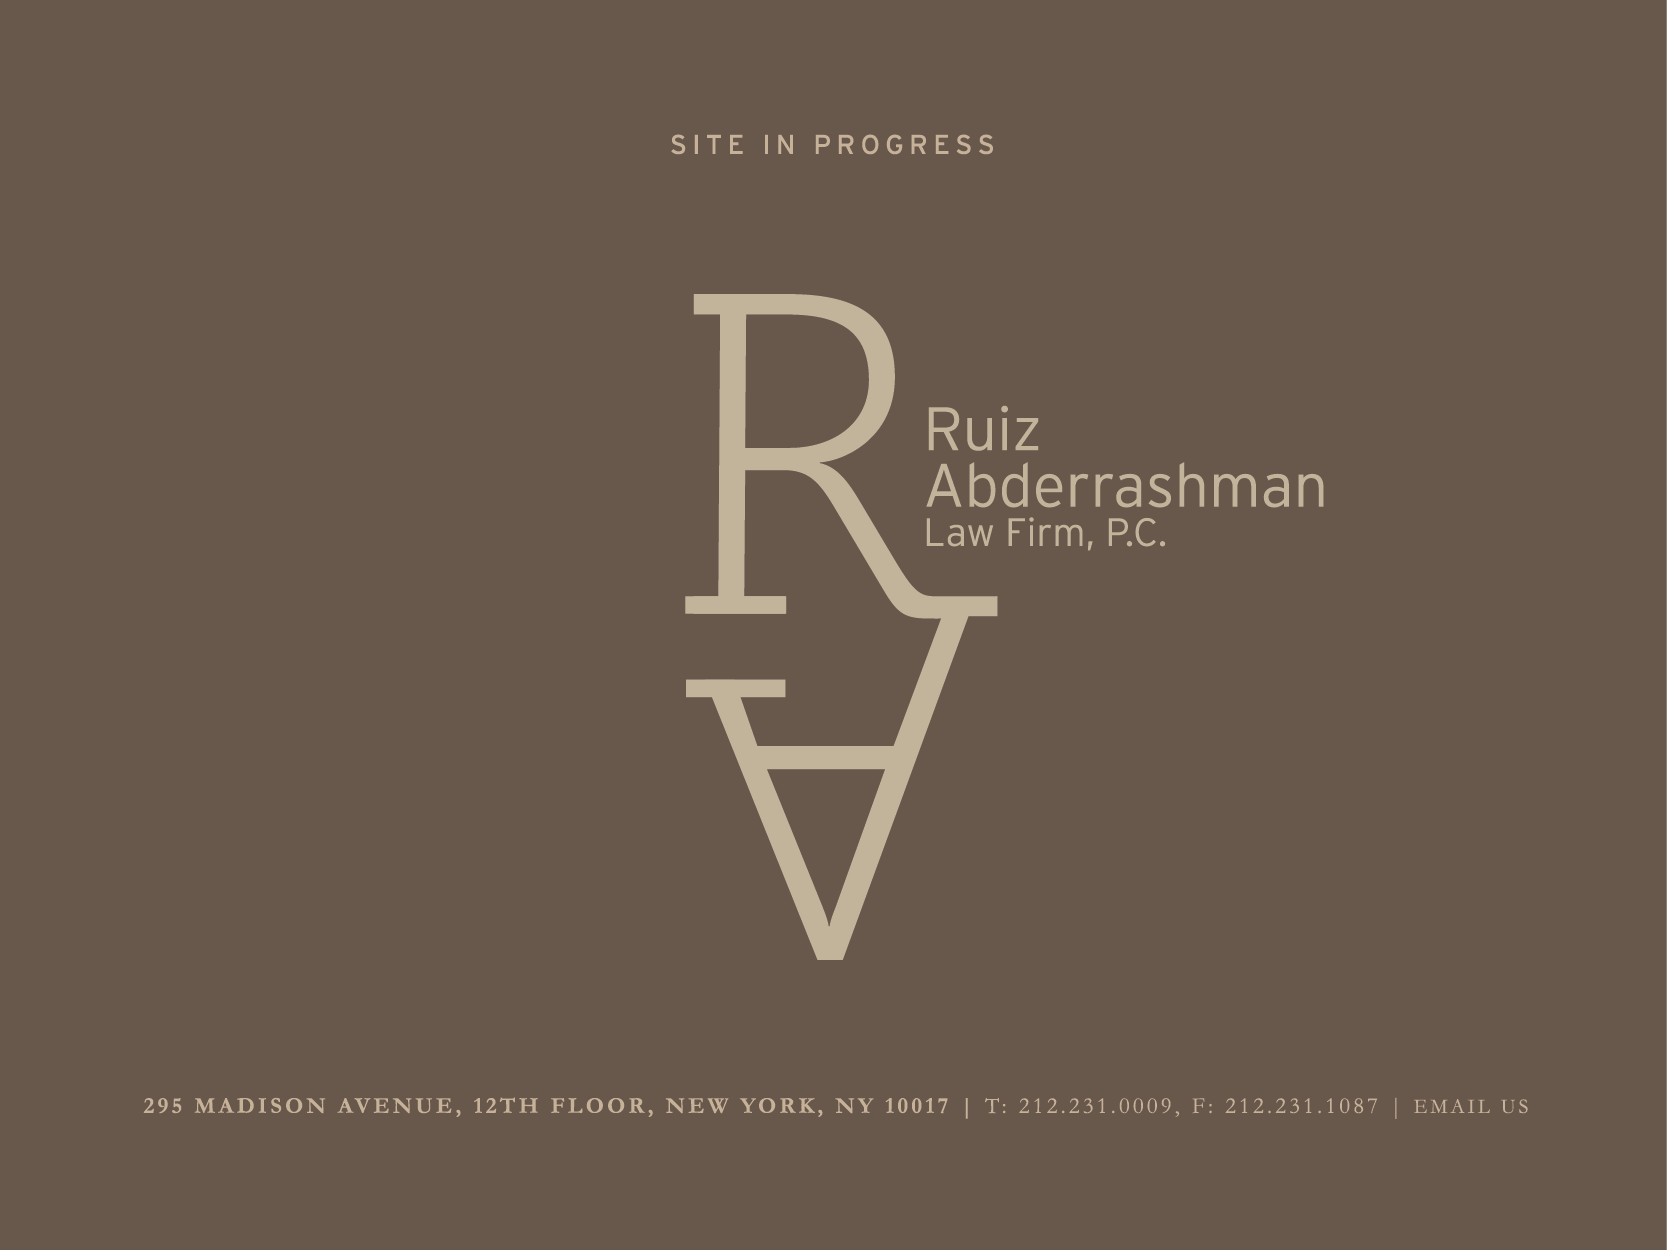 Ruiz Abderashman Law Firm, P.C.